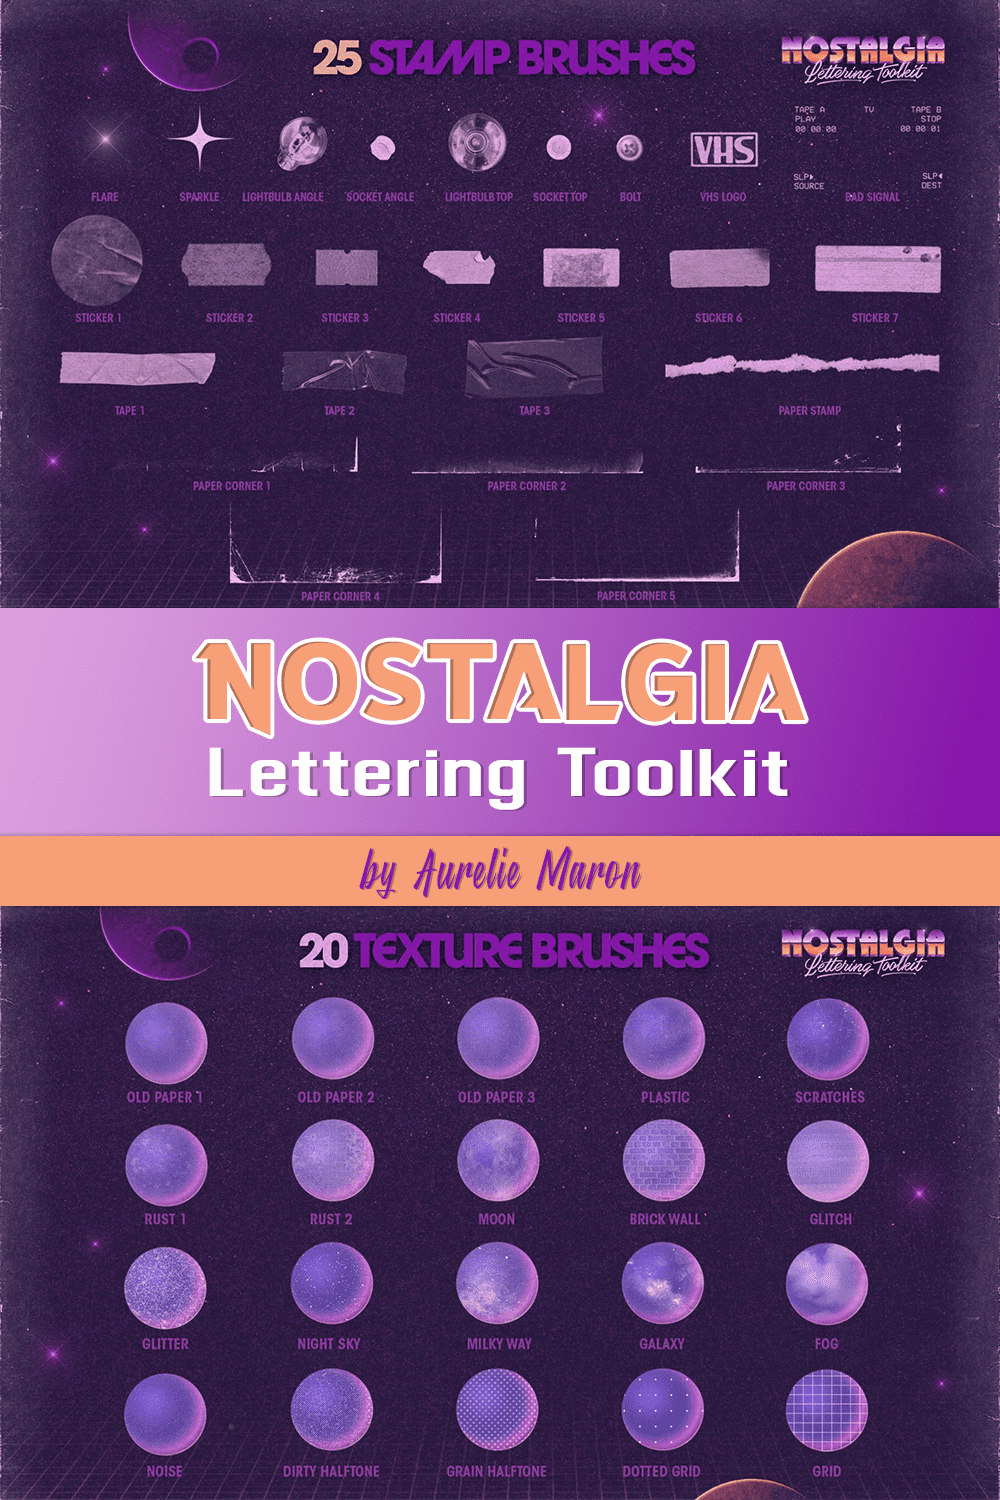 Nostalgia Lettering Toolkit by Aurelie Maron.